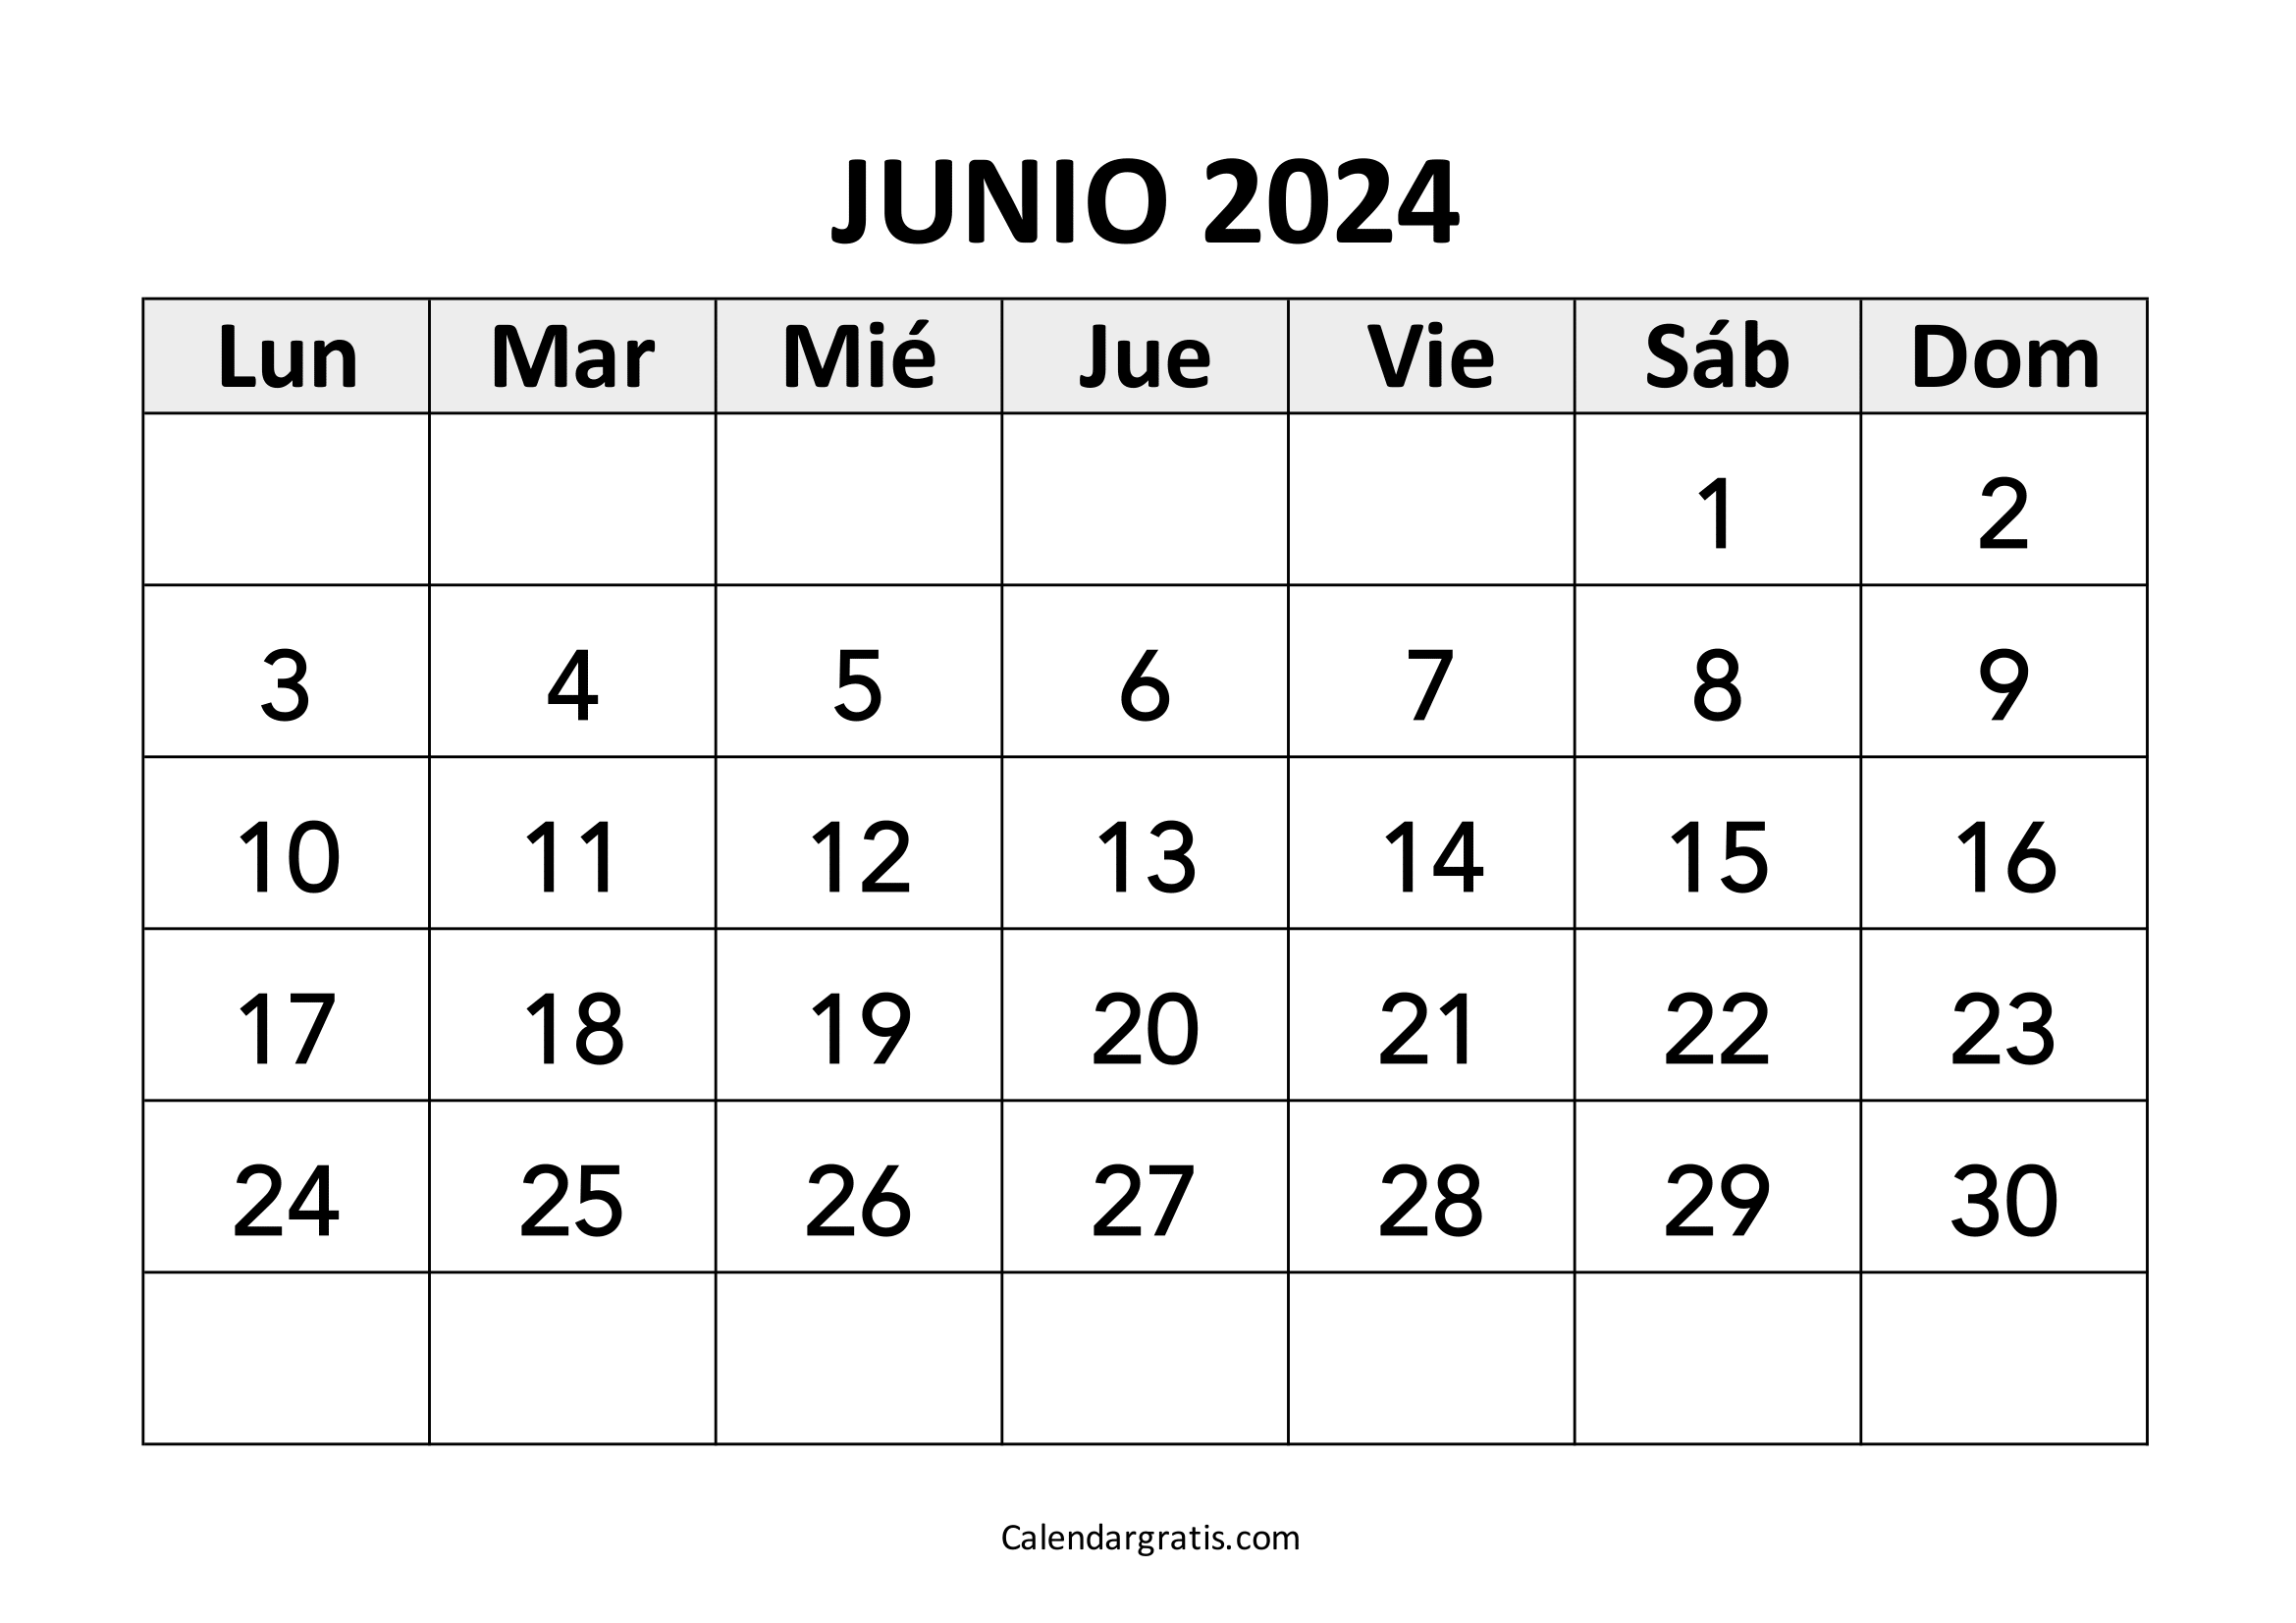 Calendario del mes de junio 2024